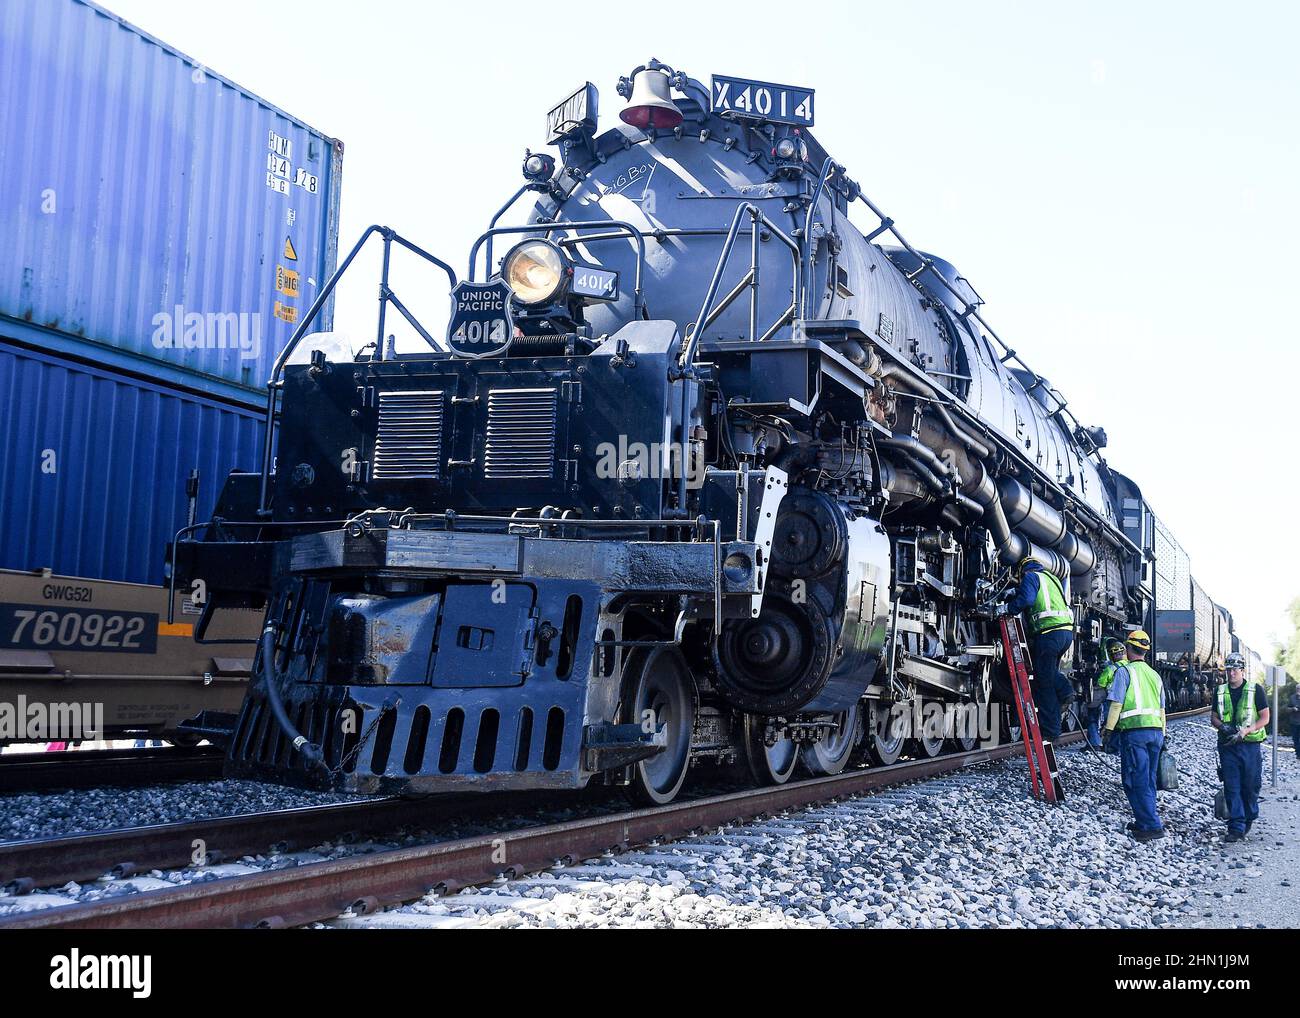 La locomotive Union Pacific 'Big Boy' s'arrête pour l'entretien à Niland, en Californie. Banque D'Images